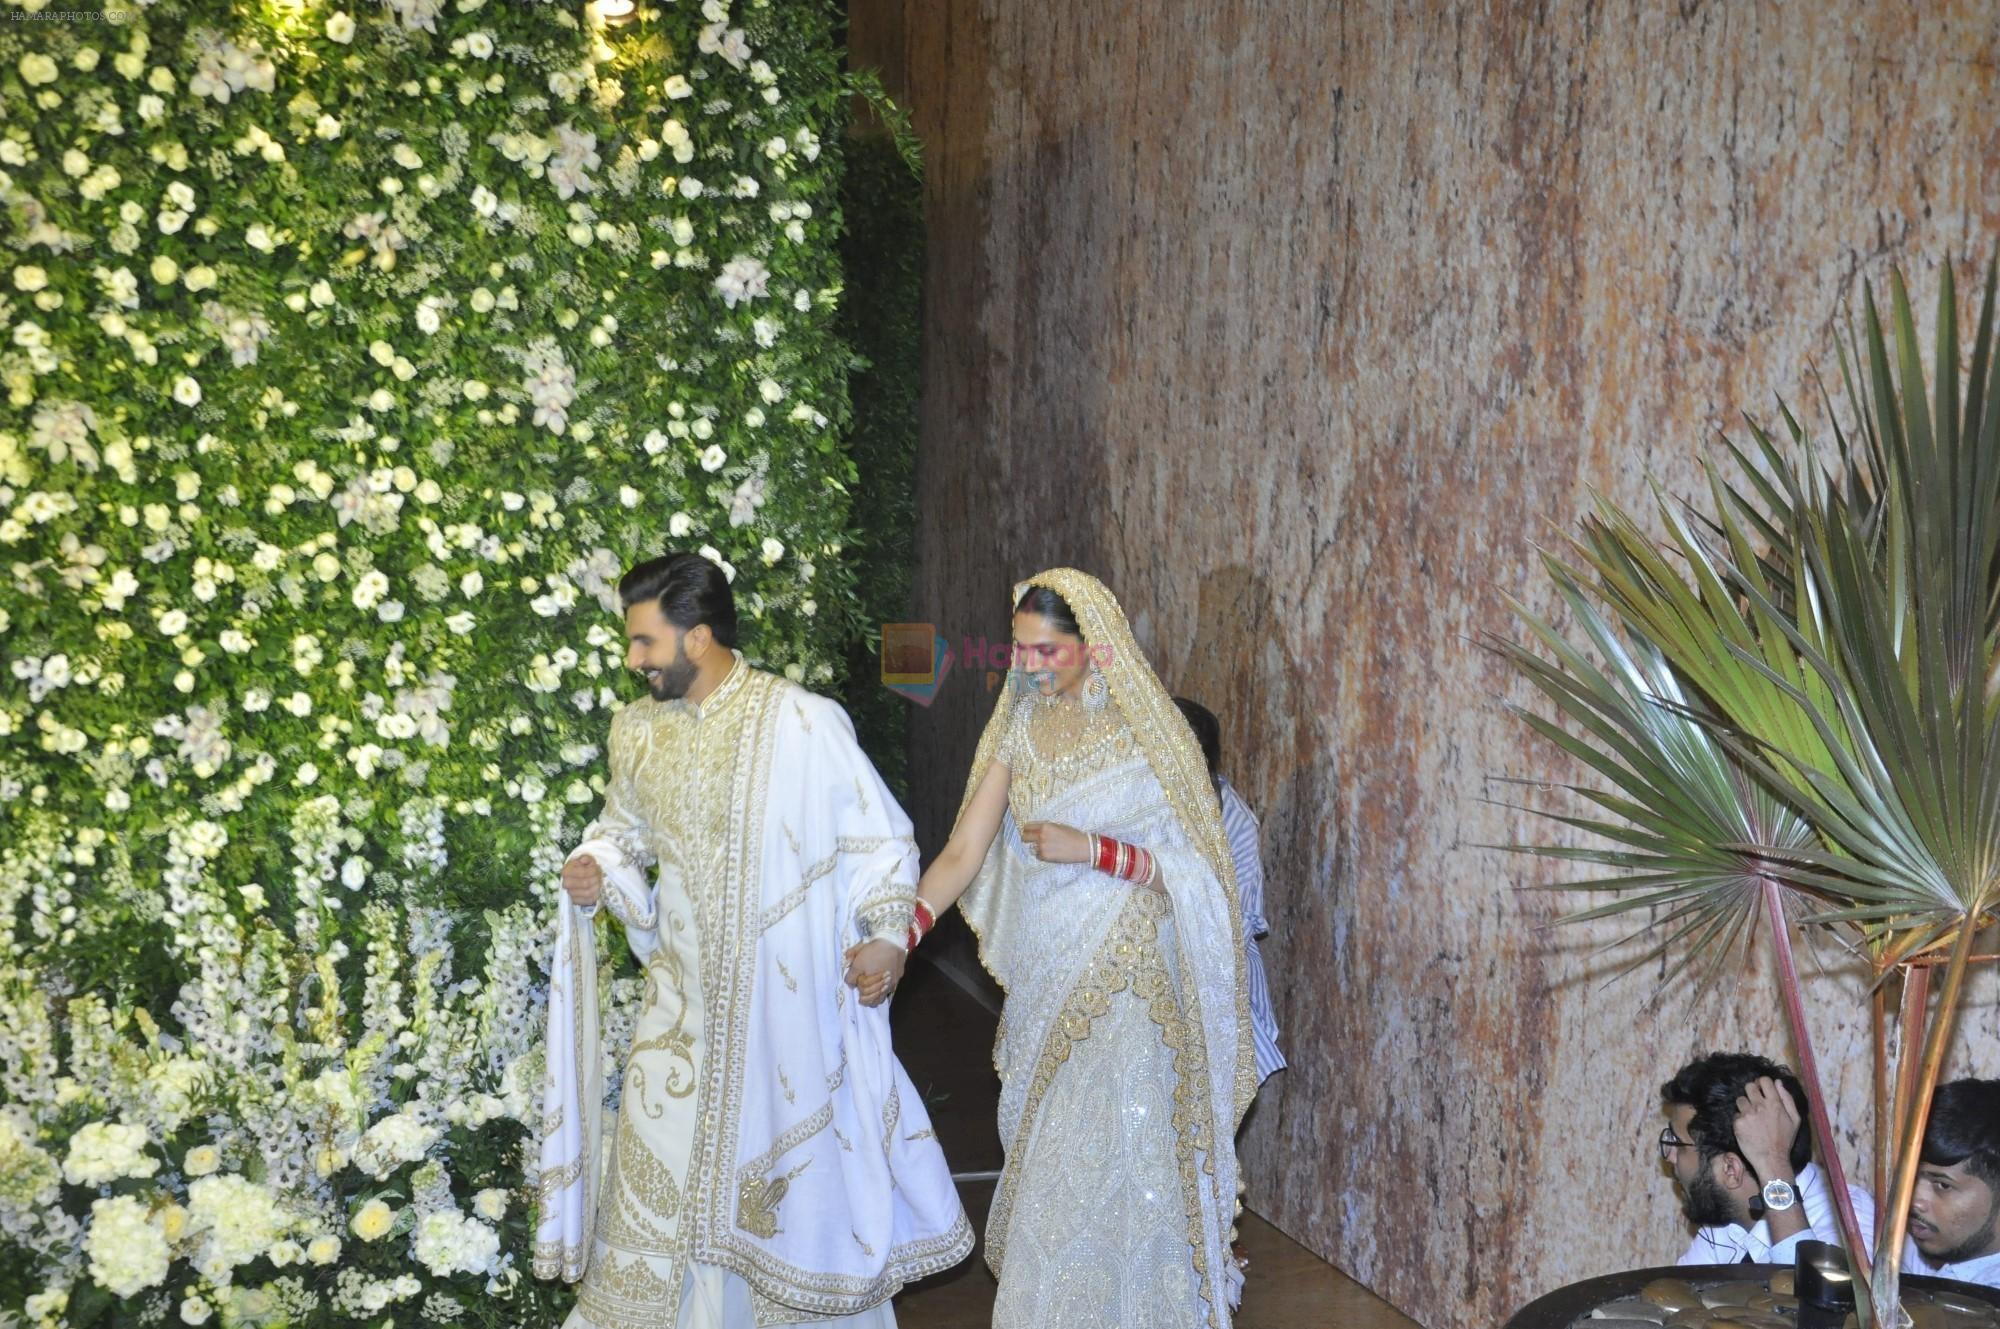 Ranveer Singh And Deepika Padukone's Wedding Reception on 28th Nov 2018